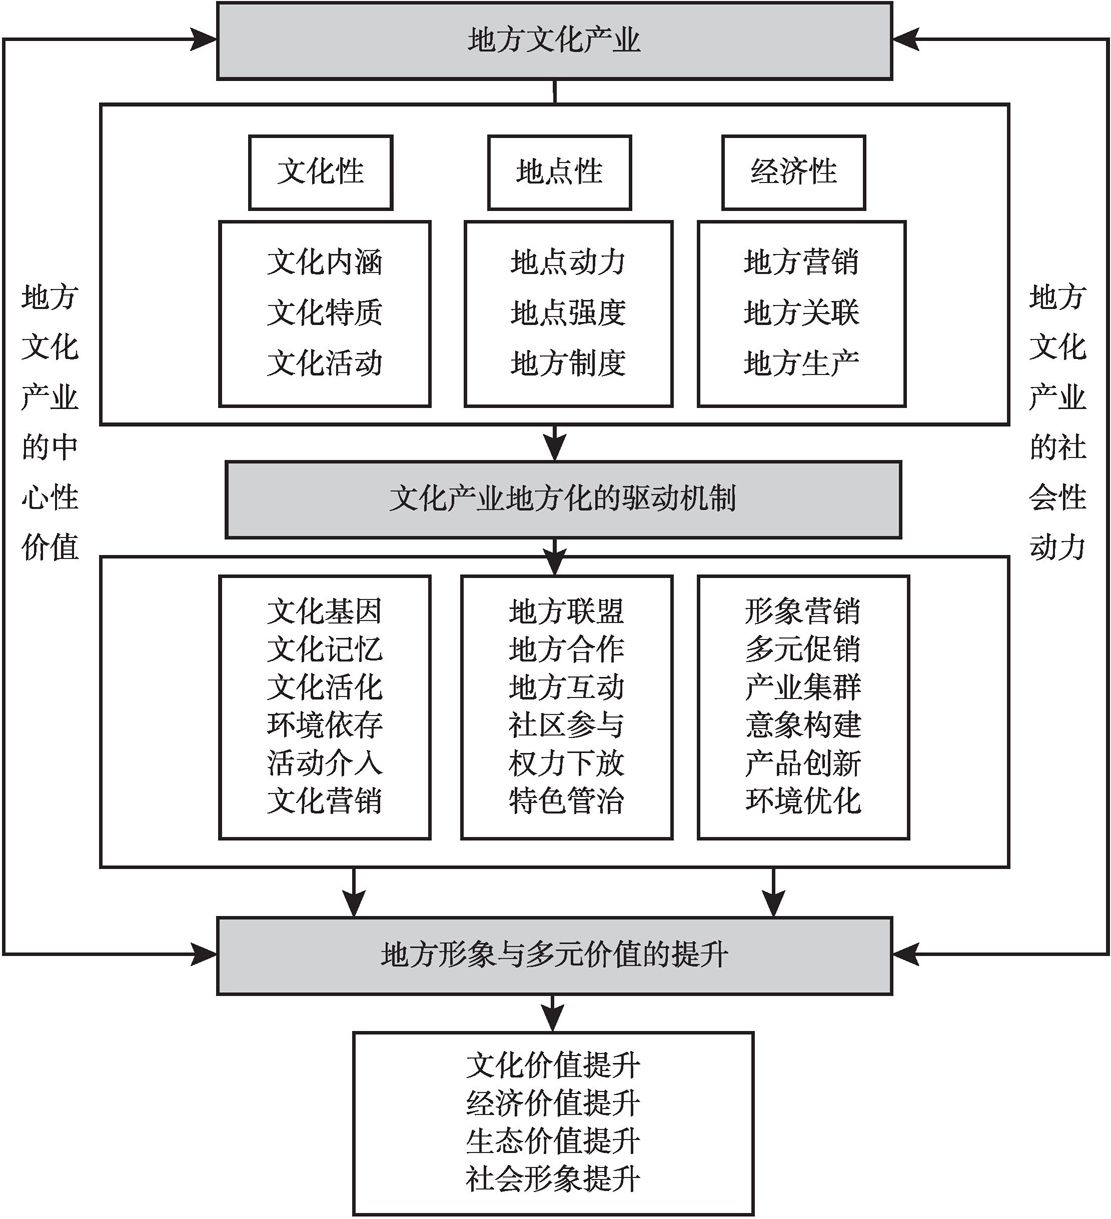 图10-6 文化产业地方化的综合作用机制分析